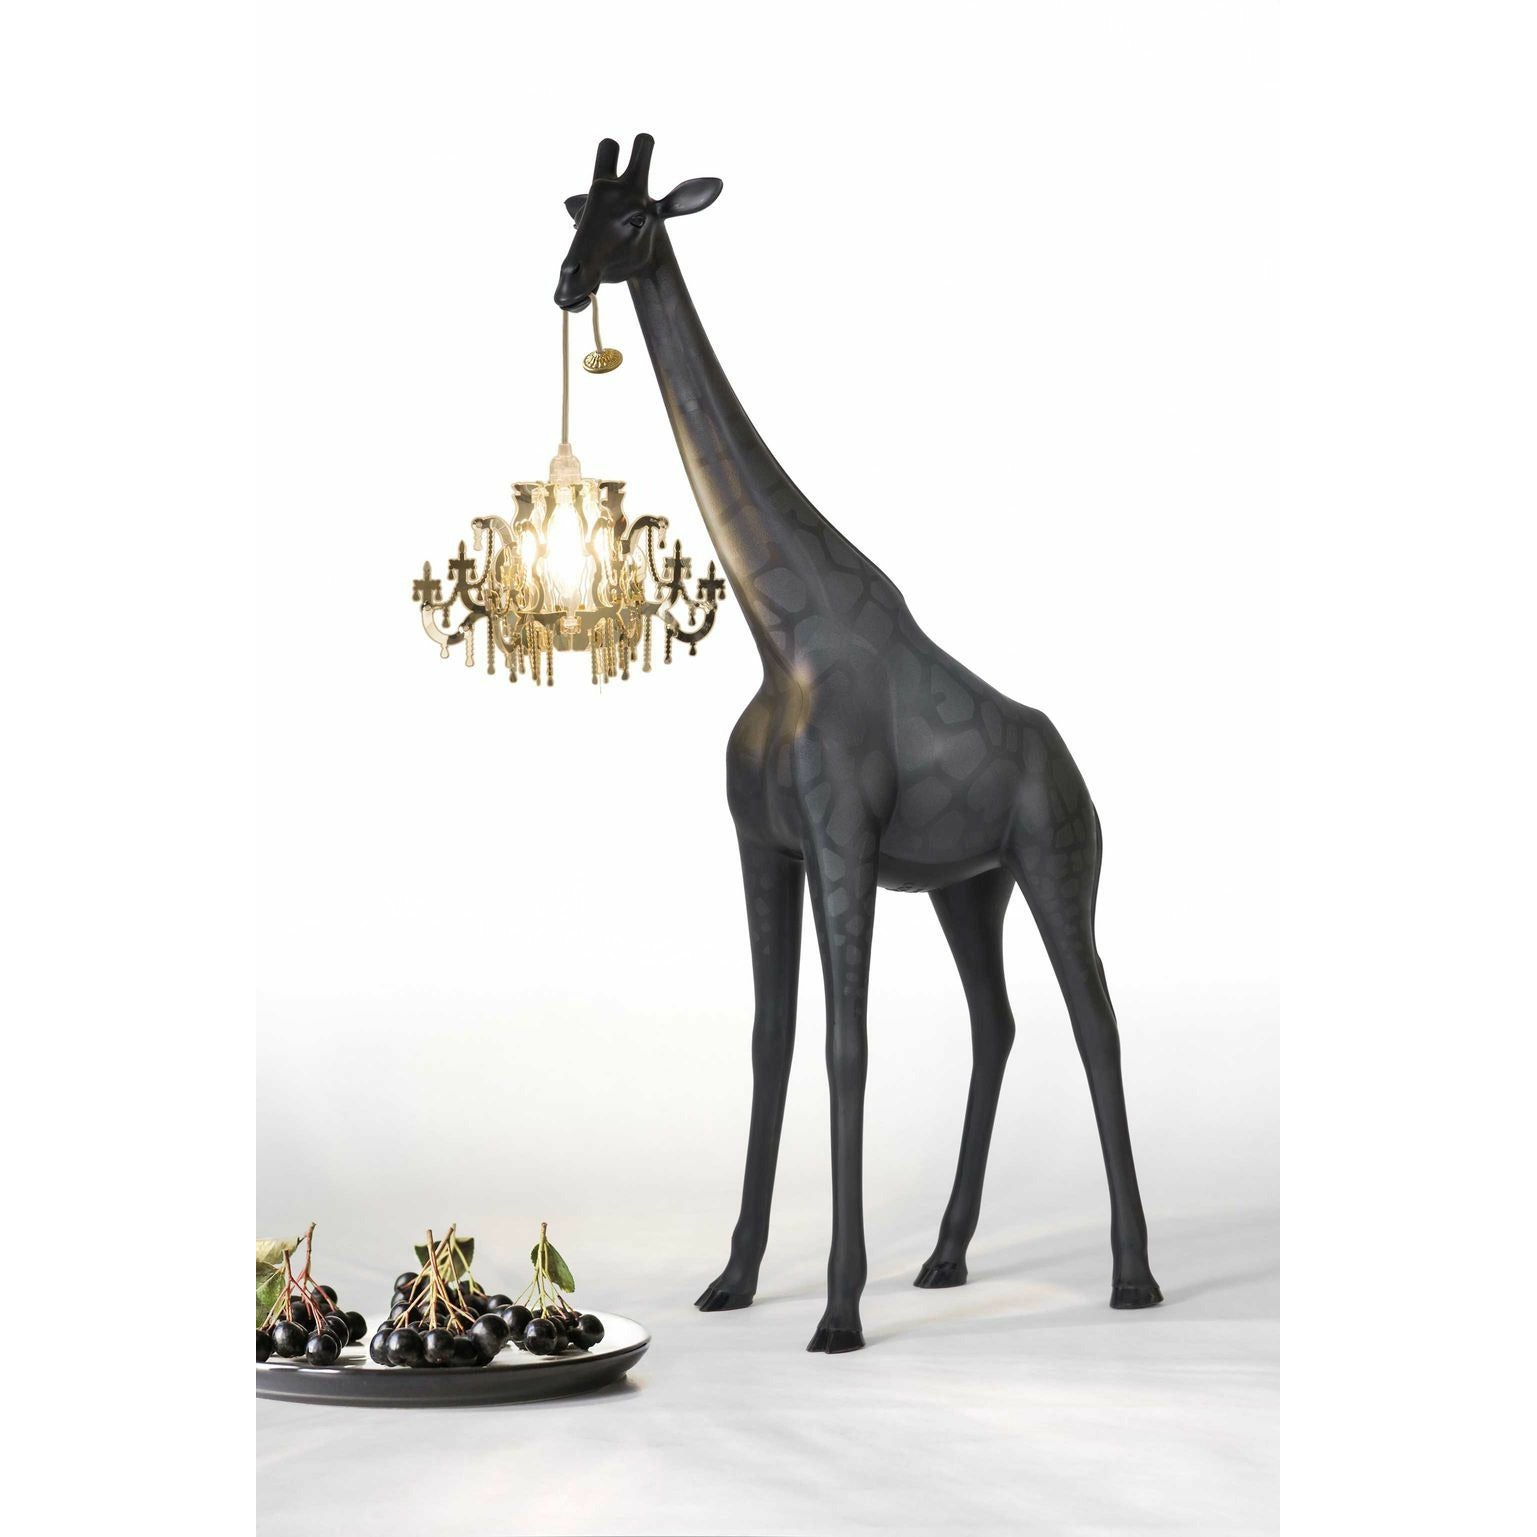 Giraffa qeoboo in amore lampada da pavimento xs h 1m, nero